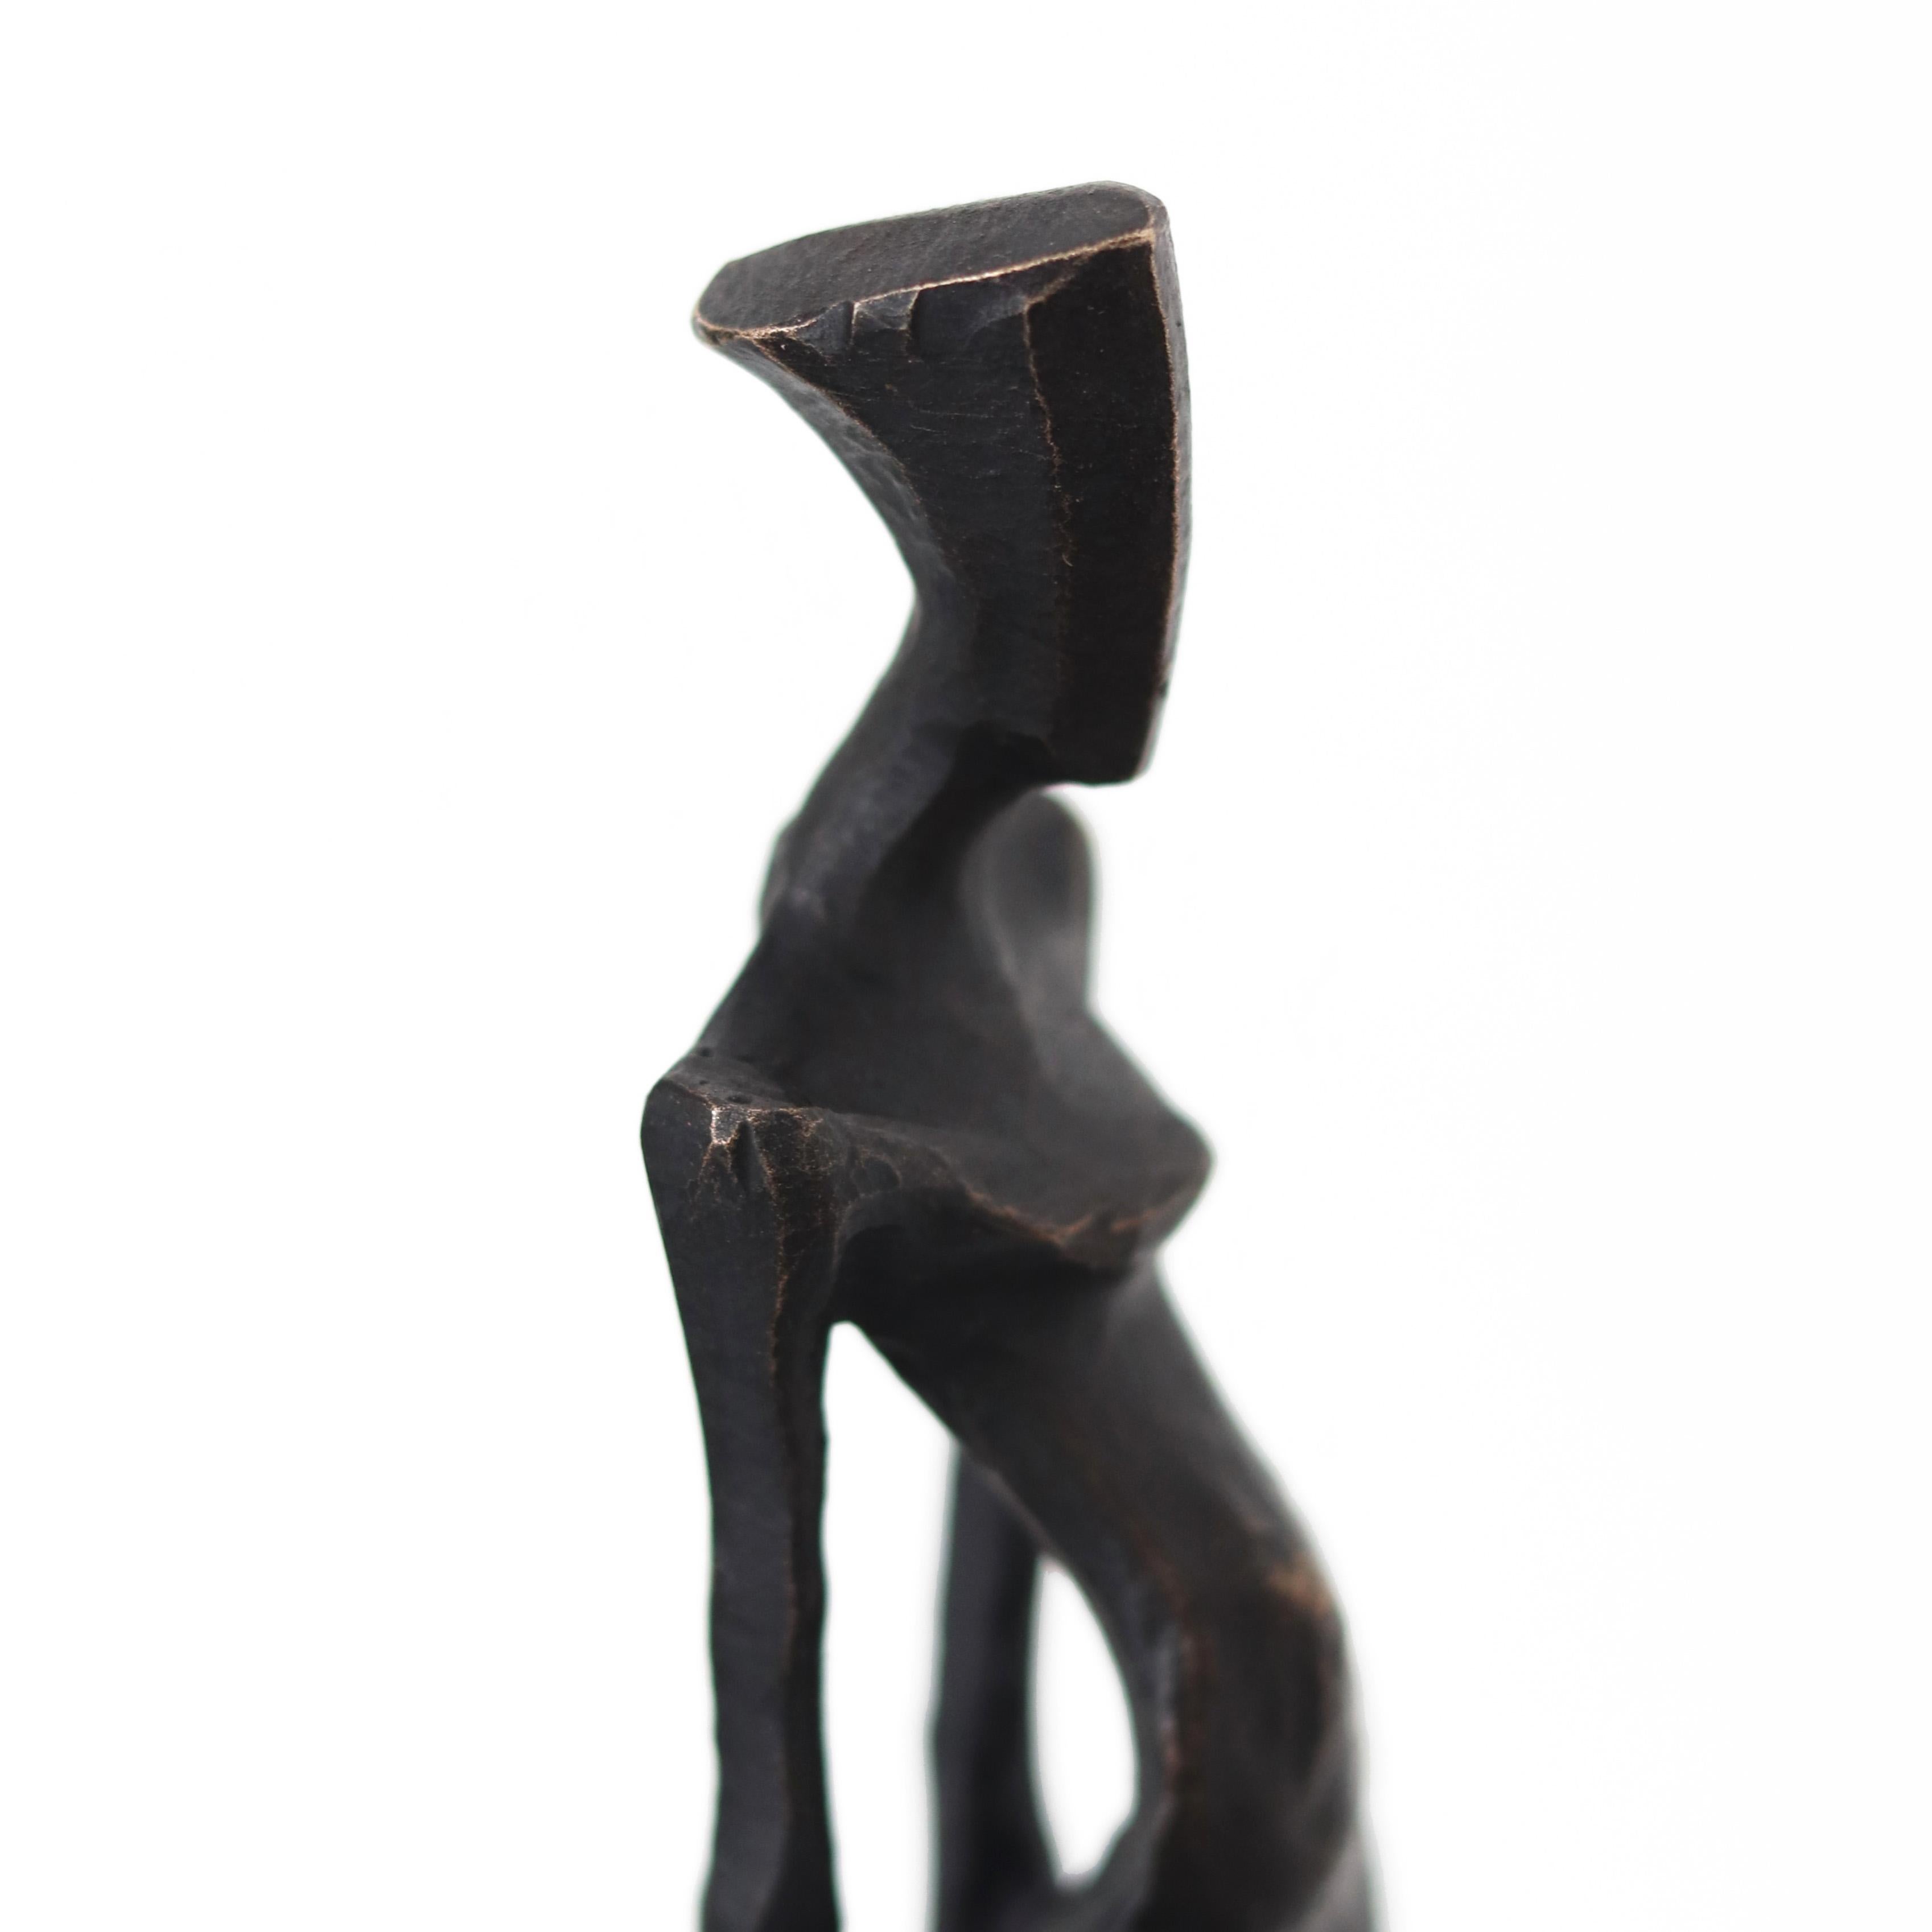 Hera  Anmutige moderne figurative Bronzeskulptur – Originalkunst und Design  (Abstrakt), Sculpture, von Nando Kallweit